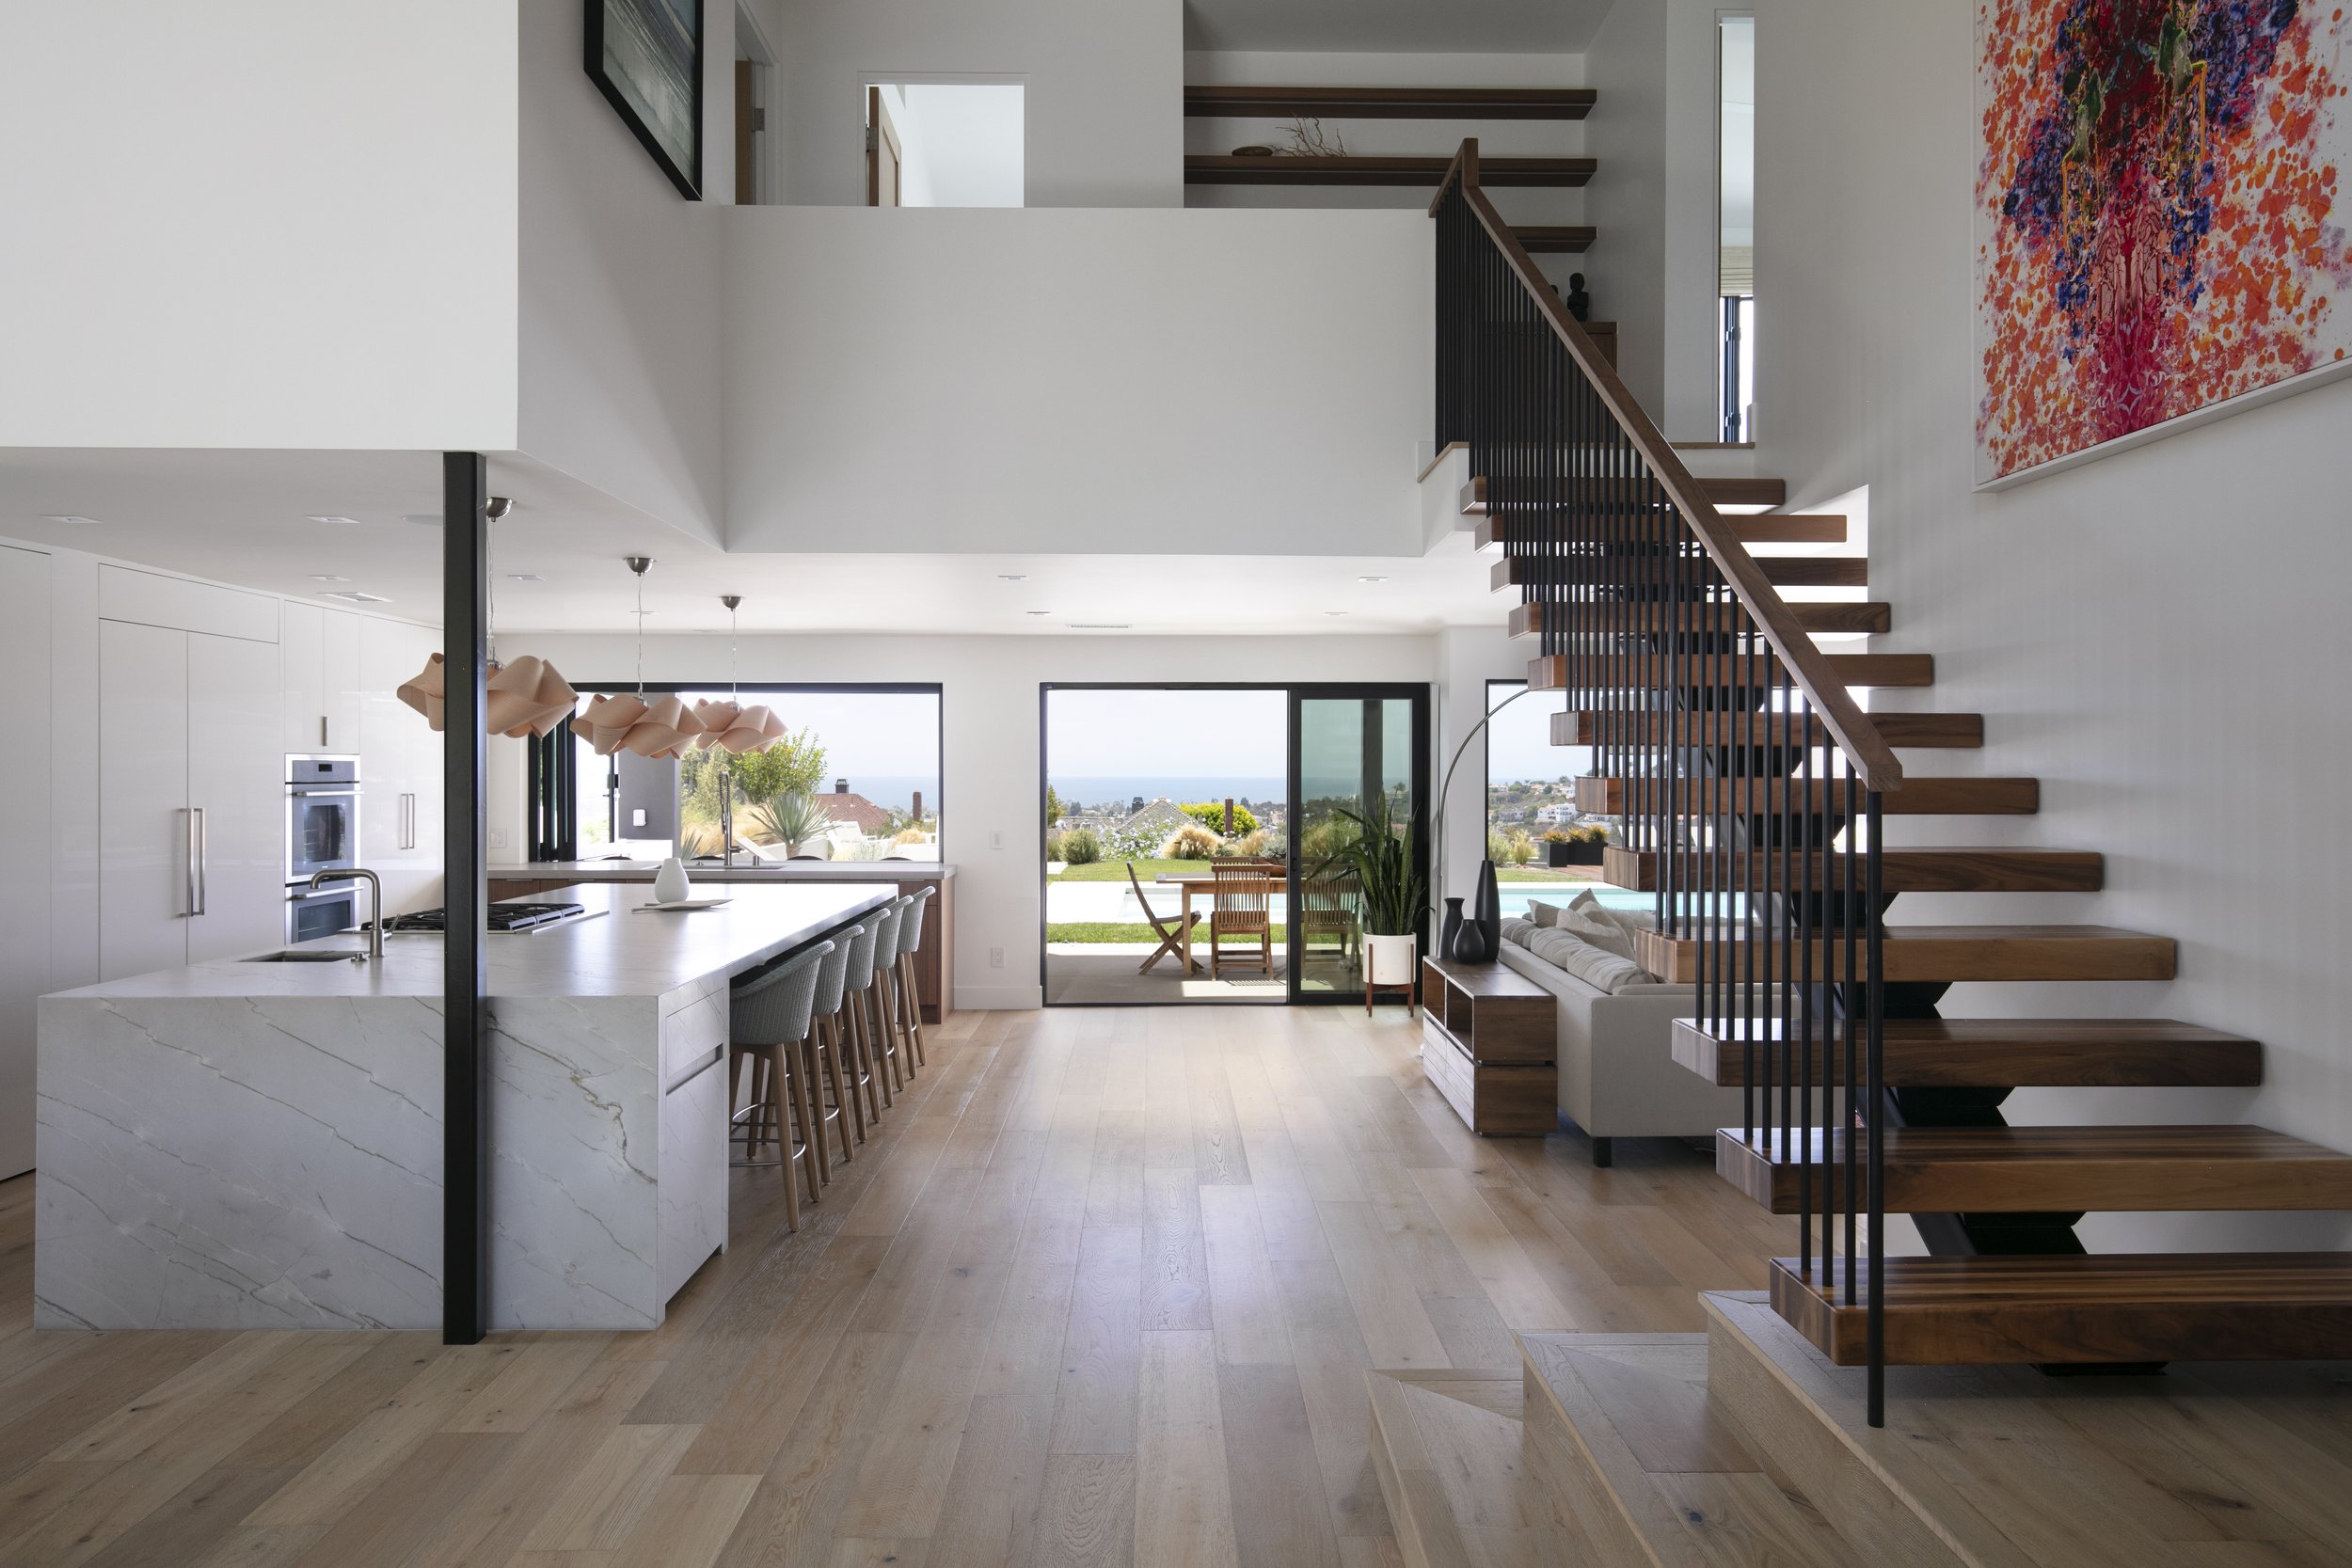 Eyoh Design - modern architecture -modern interiors - interior design- San Clemente Architect - 47.jpg